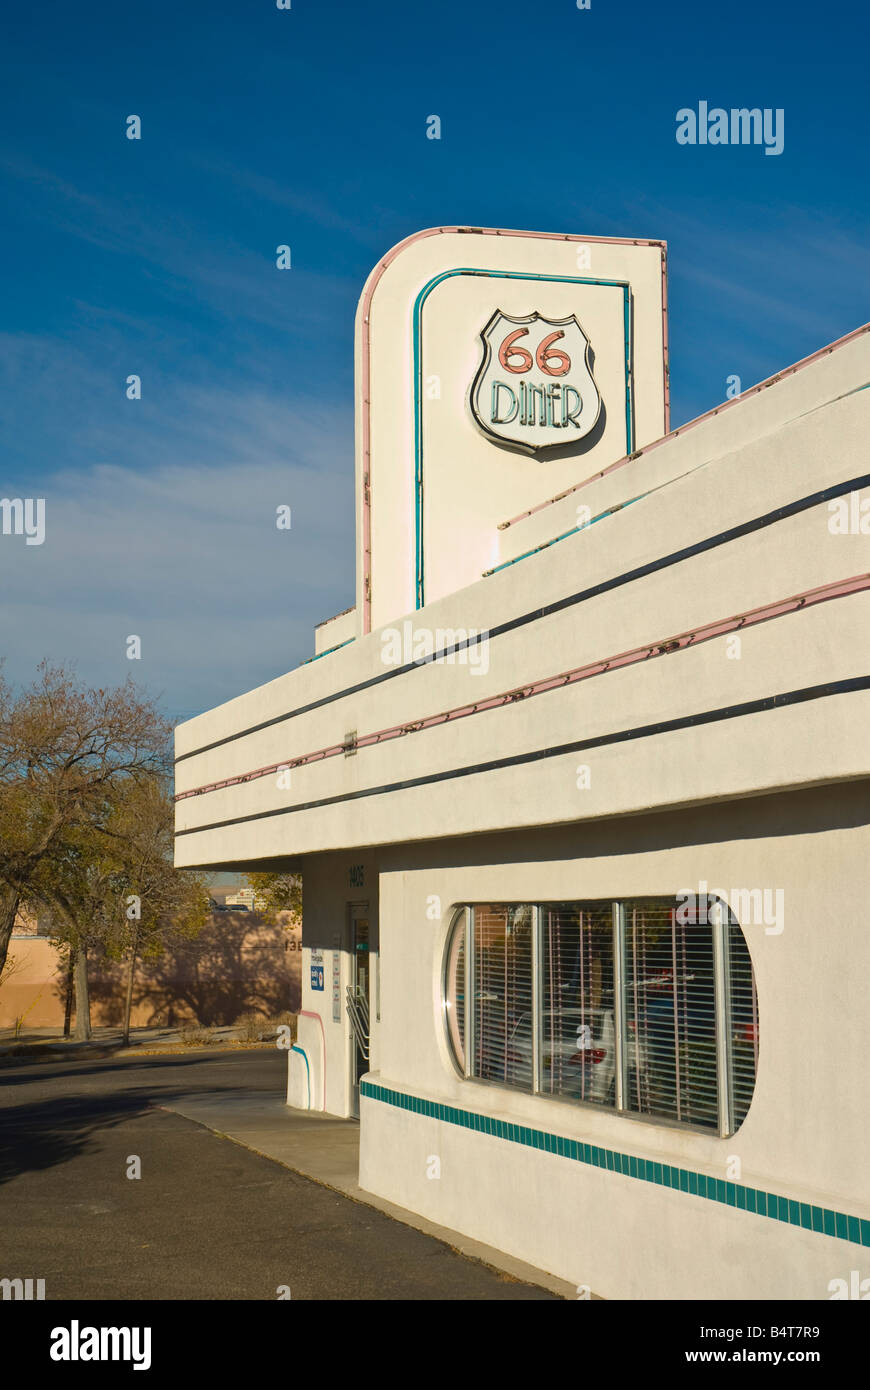 USA, New Mexico, Albuquerque, Route 66 Diner Stock Photo